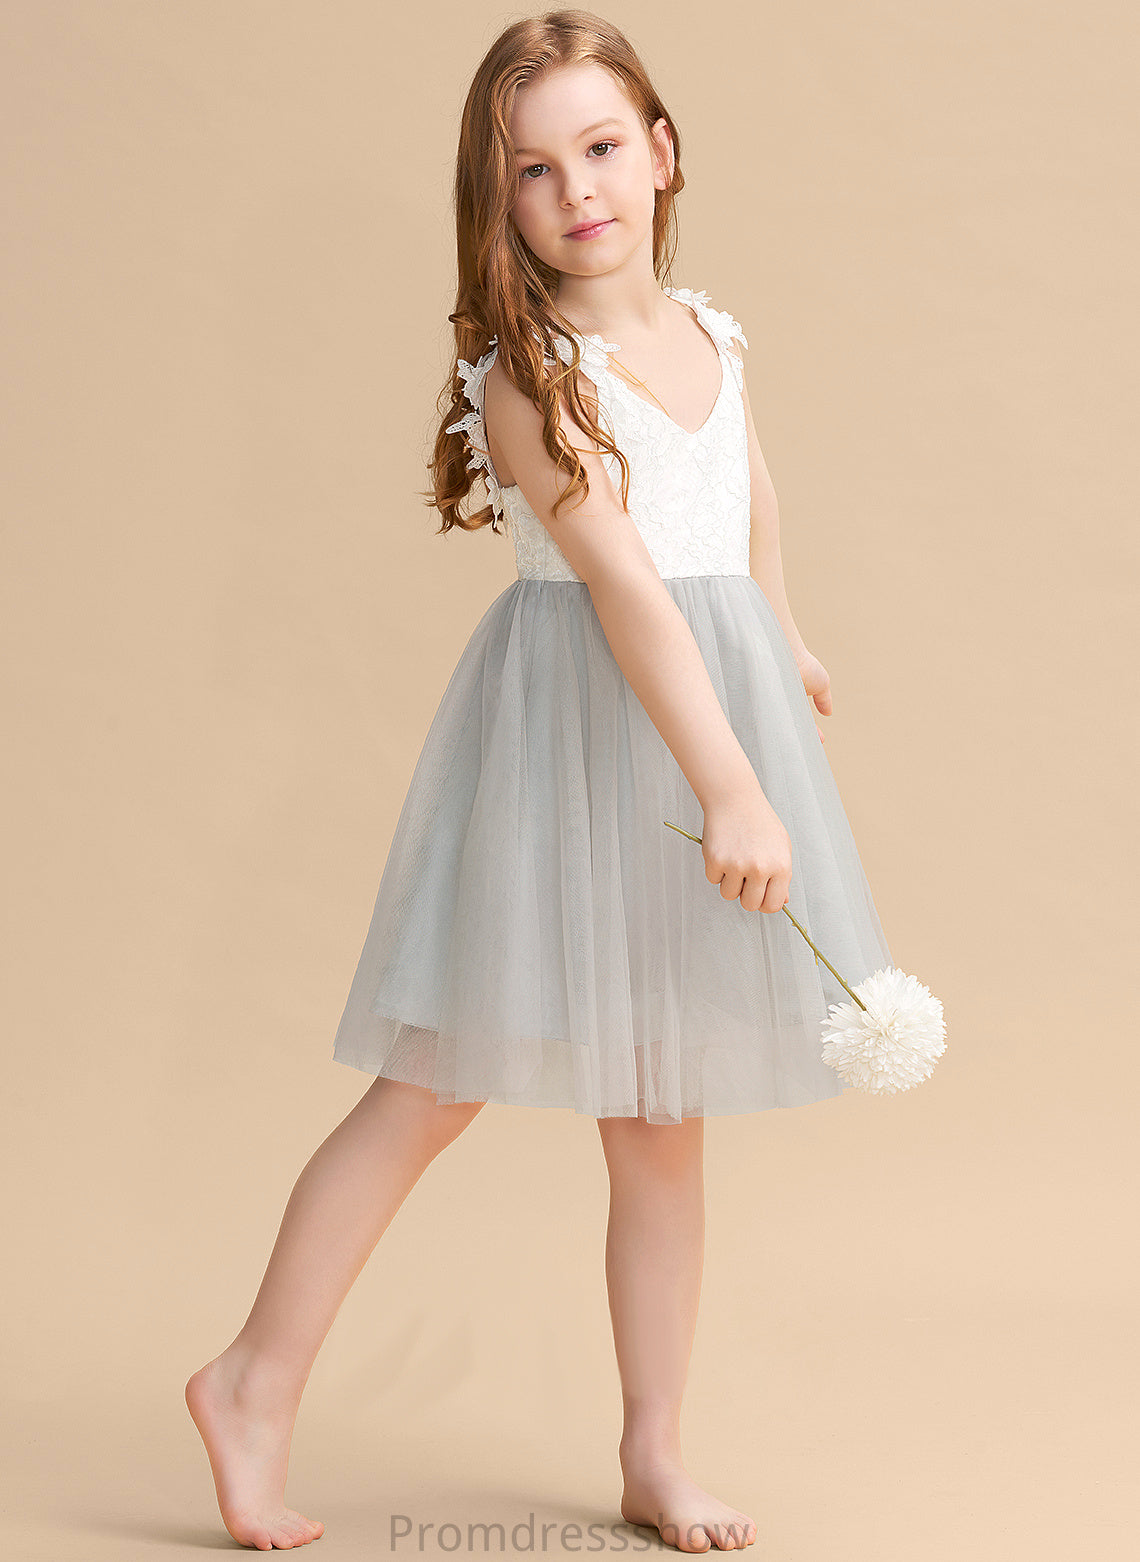 Flower Sleeveless Tulle/Lace A-Line Flower Girl Dresses - Girl Knee-length Dress Kasey V-neck